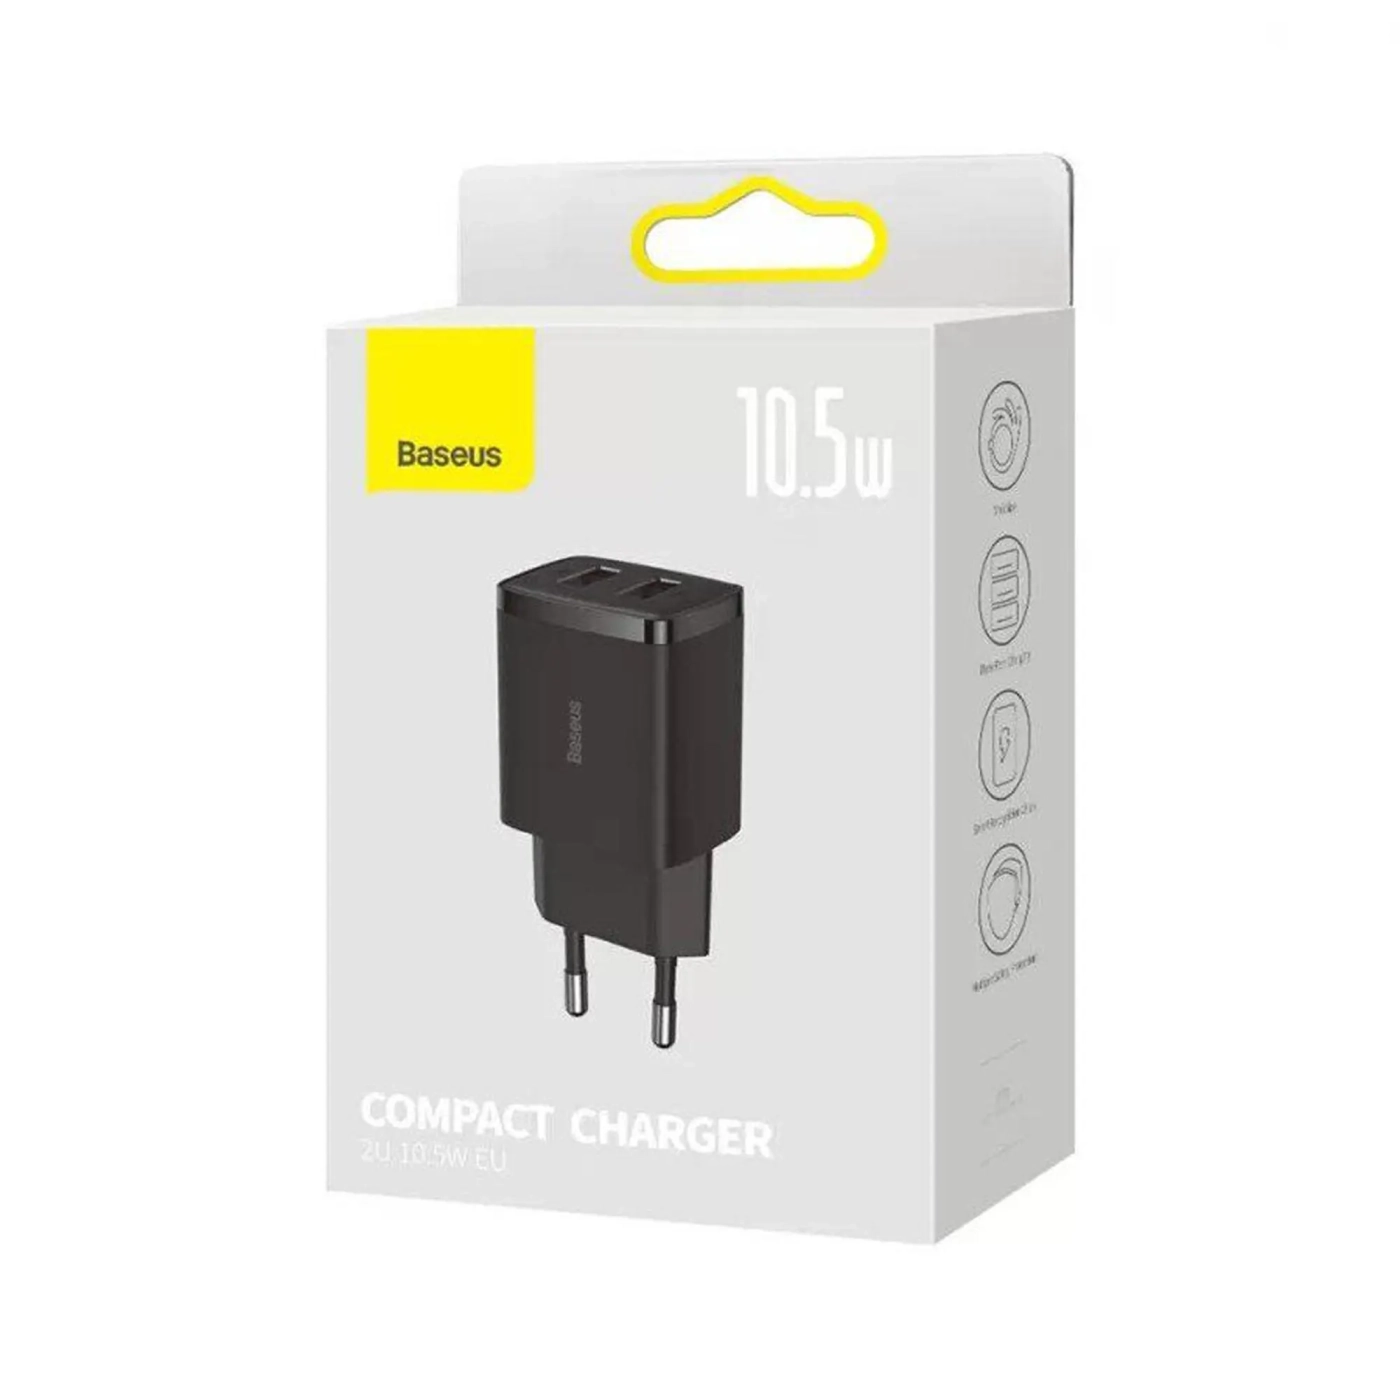 Купить Зарядное устройство для Baseus Compact Charger 2U 10.5W Black (CCXJ010201) - фото 6